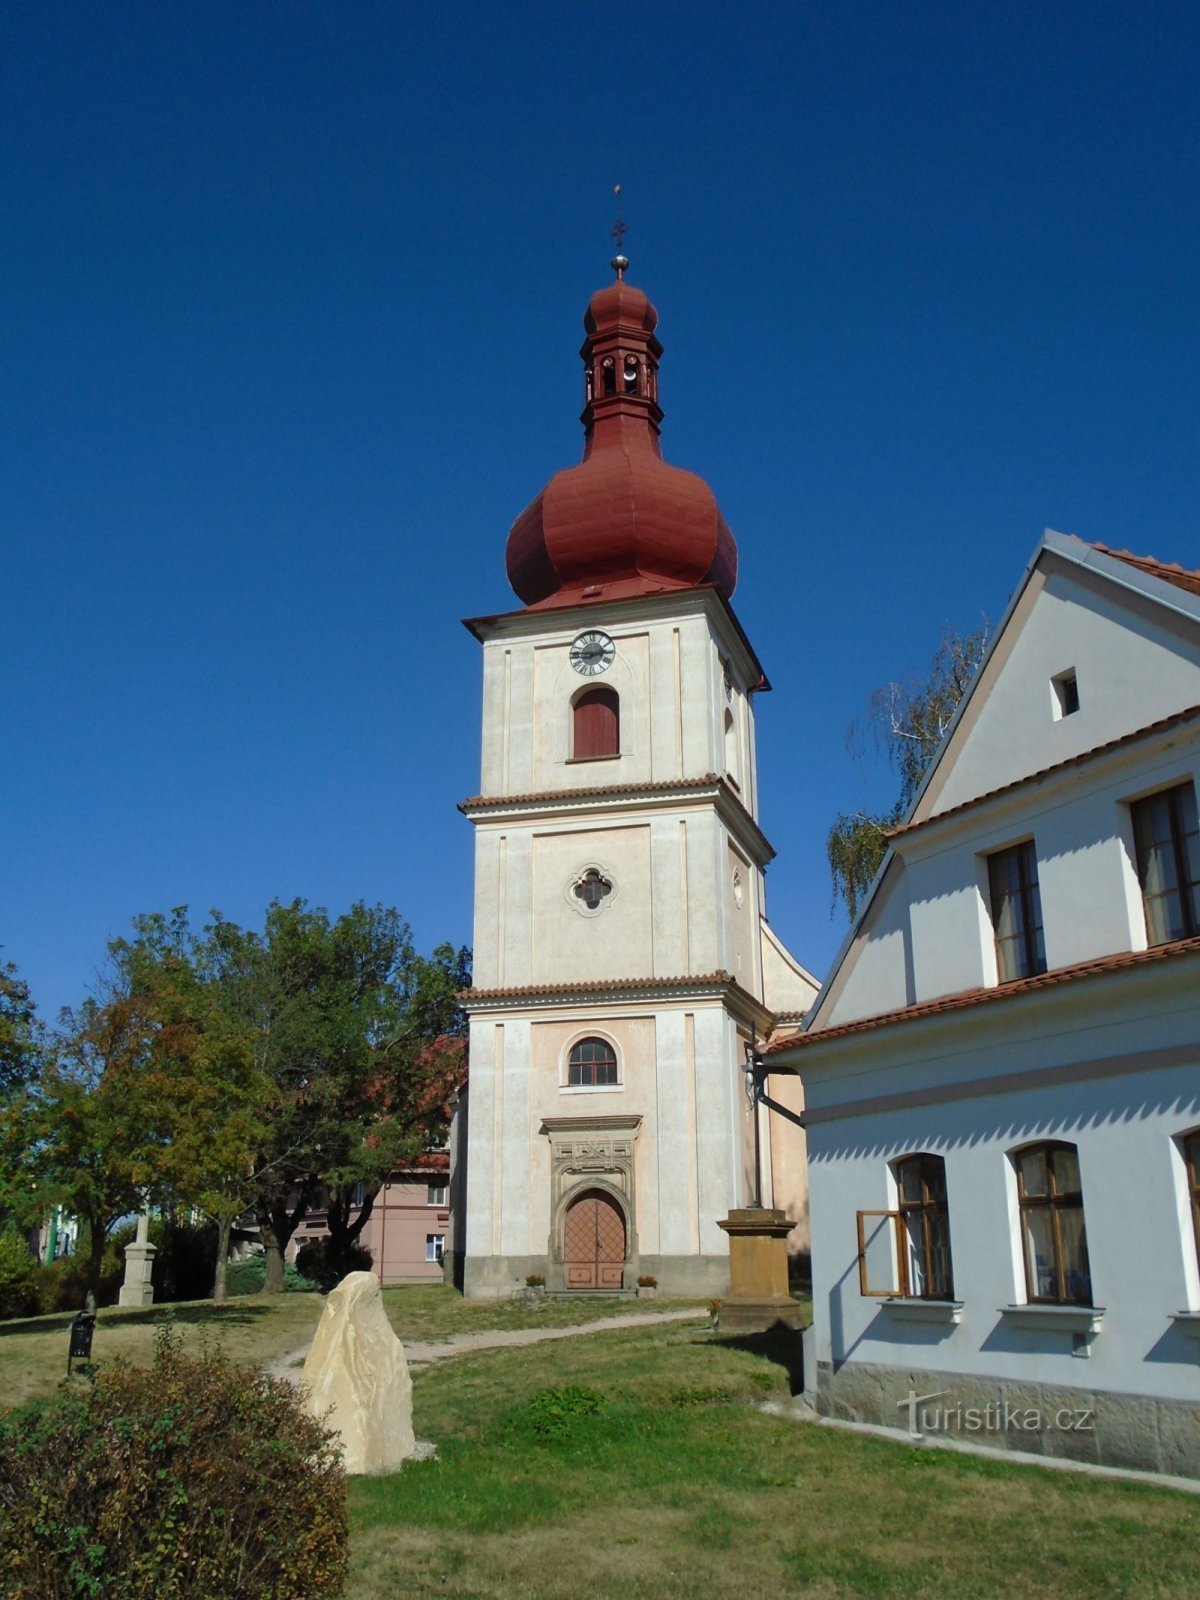 Nhà thờ St. Jakub (Jaroměř, 12.9.2018/XNUMX/XNUMX)